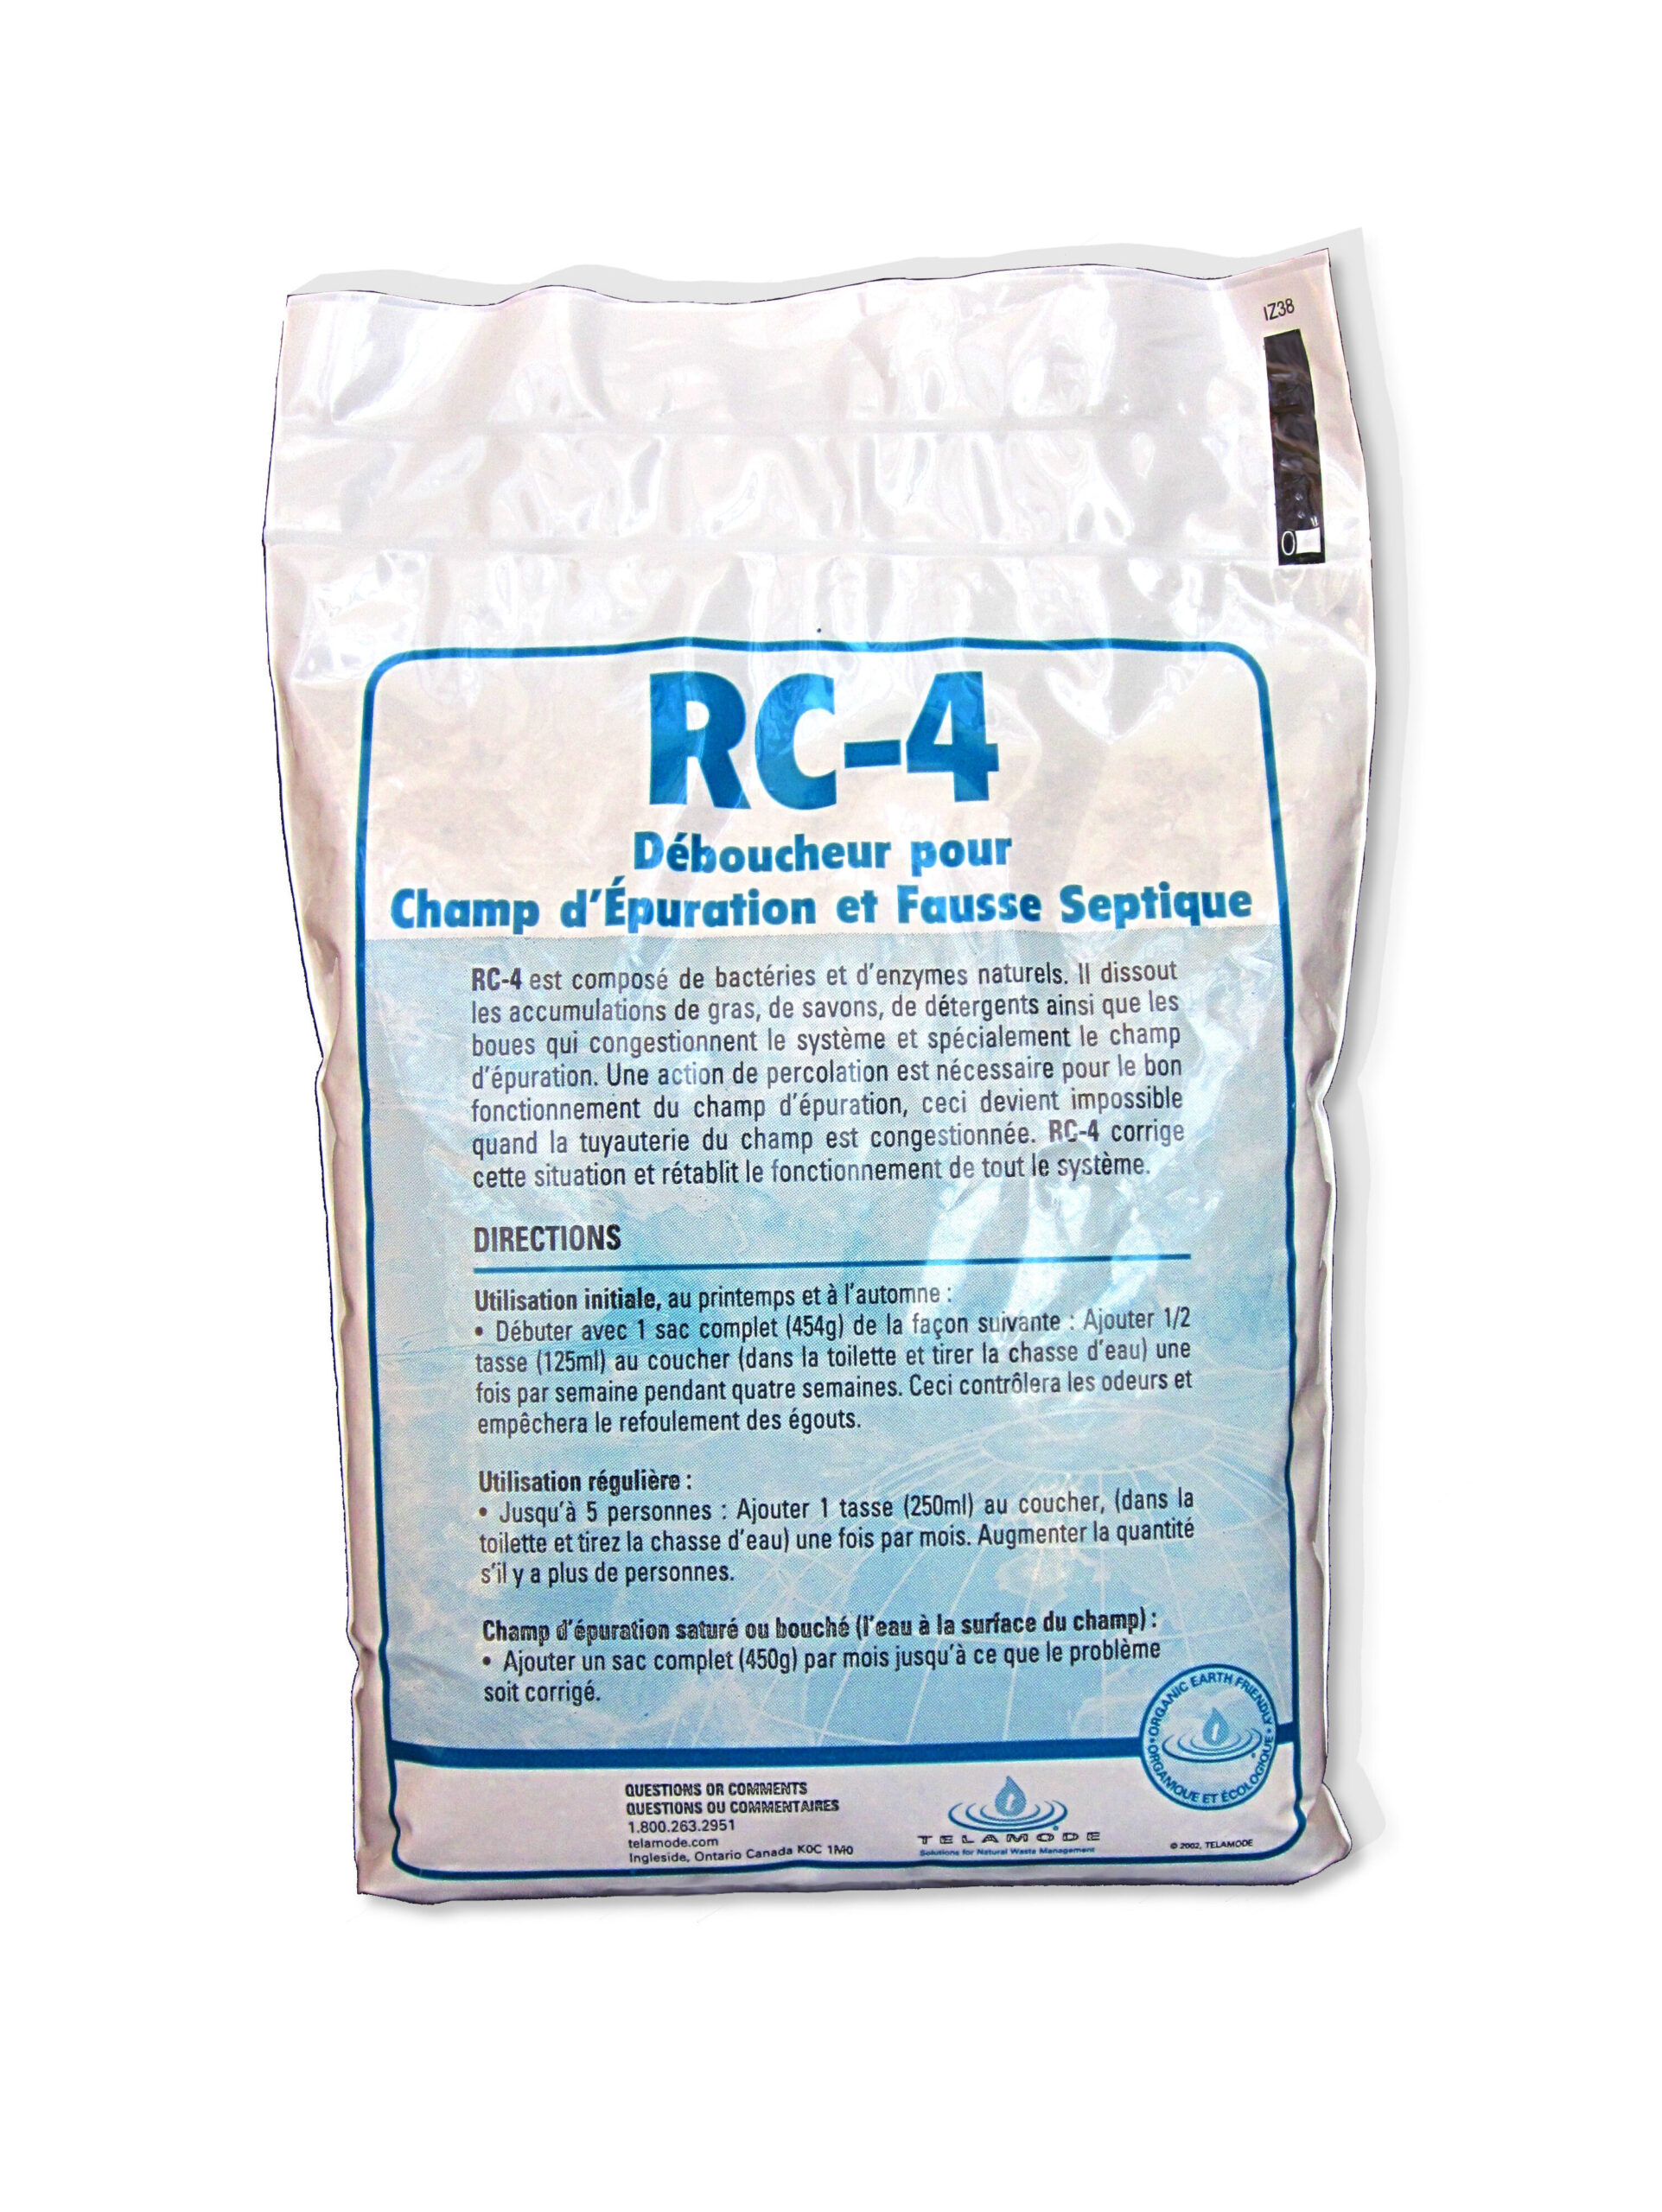 sac de RC-4, un produit qui contient des enzymes et bactéries pour fosse septique